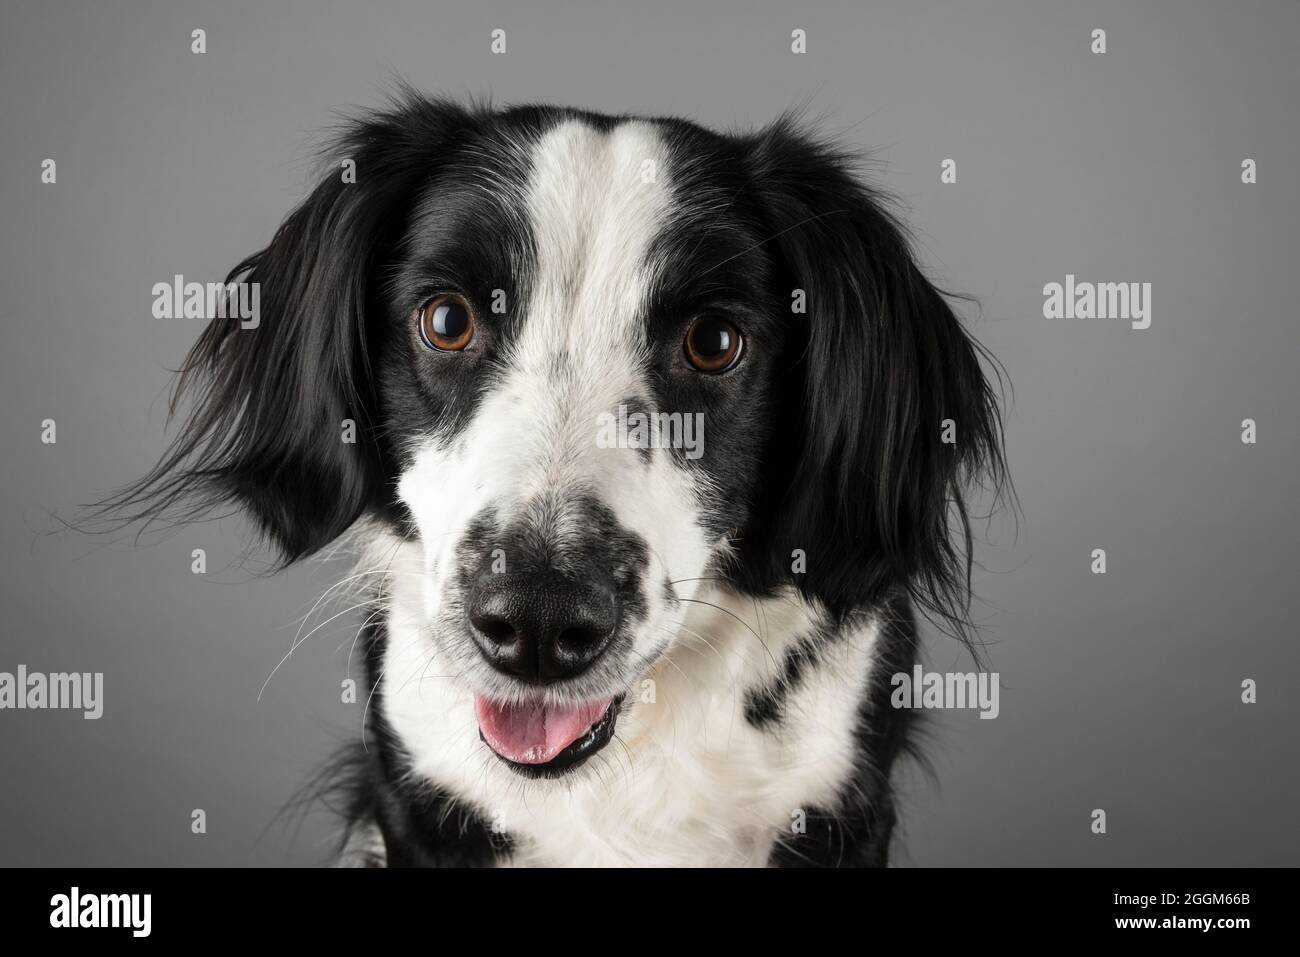 Une femme de 5 ans Border Collie / Springer Spaniel (Sprollie) chien (appelé Jess) photographié sur fond gris studio. Banque D'Images